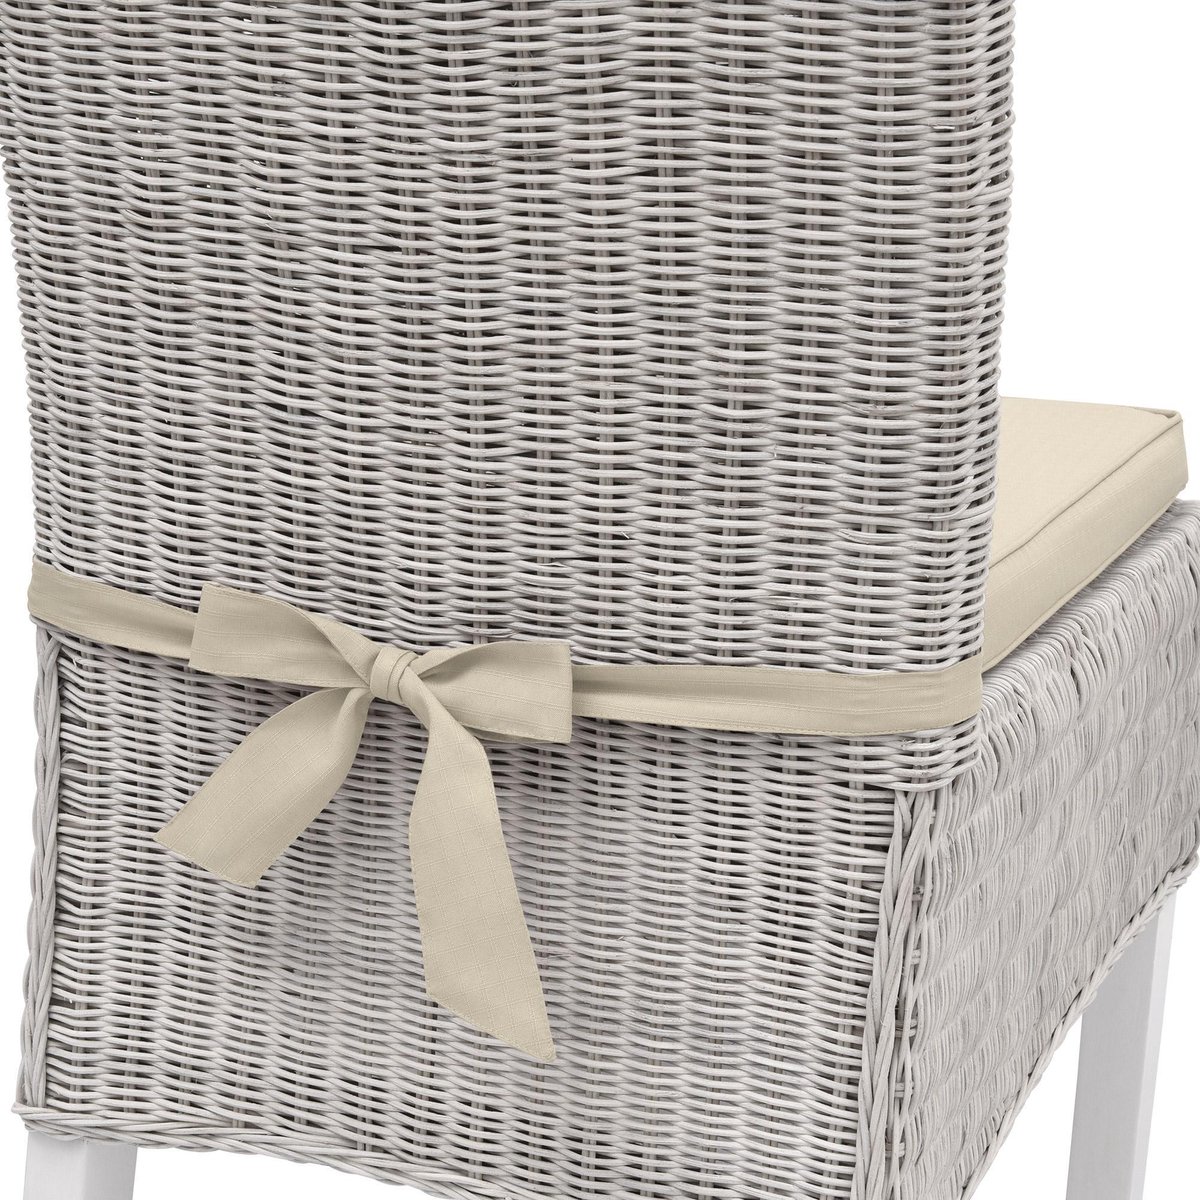 JAVAAN - Gallette de chaise 45x45 cm - avec cordons de fixation - Driftwood